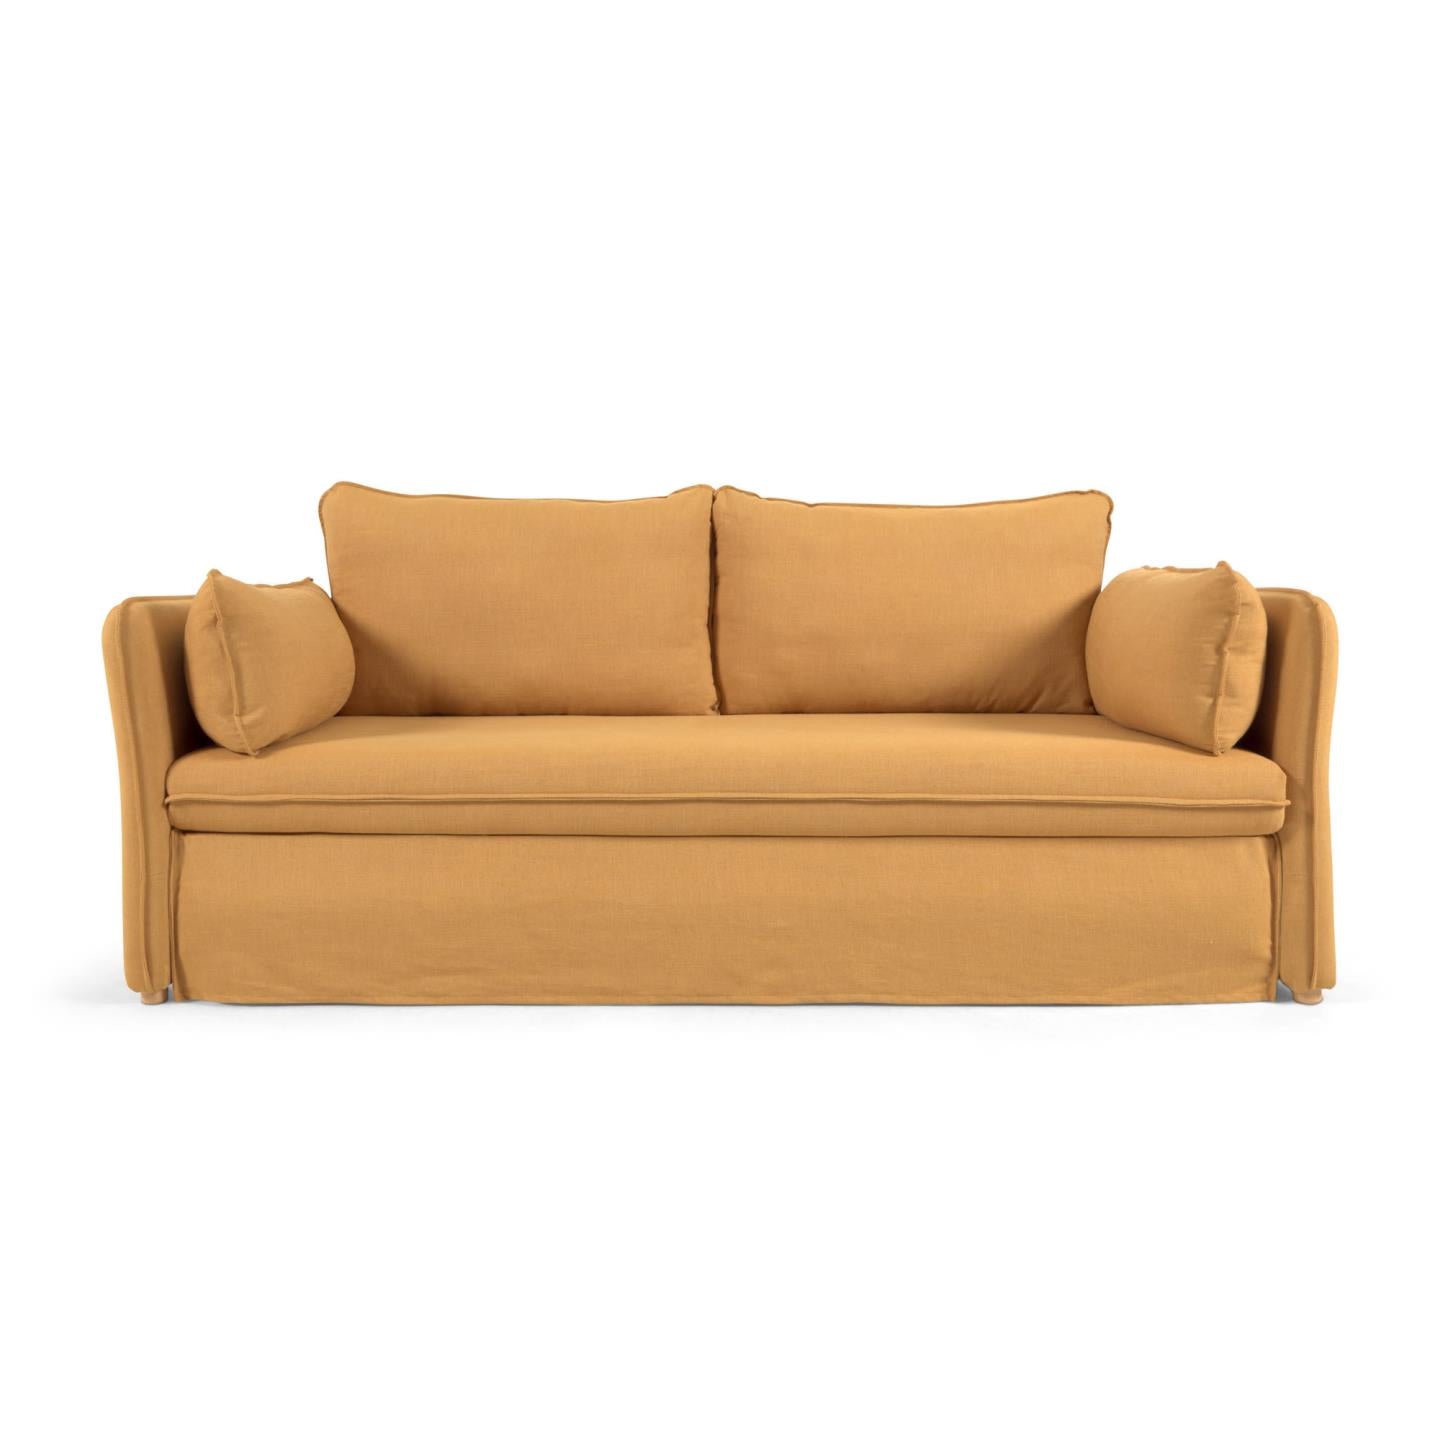 Tanit kanapéágy mustár színben, természetes kivitelben, tömör bükkfa lábakkal, 210 cm